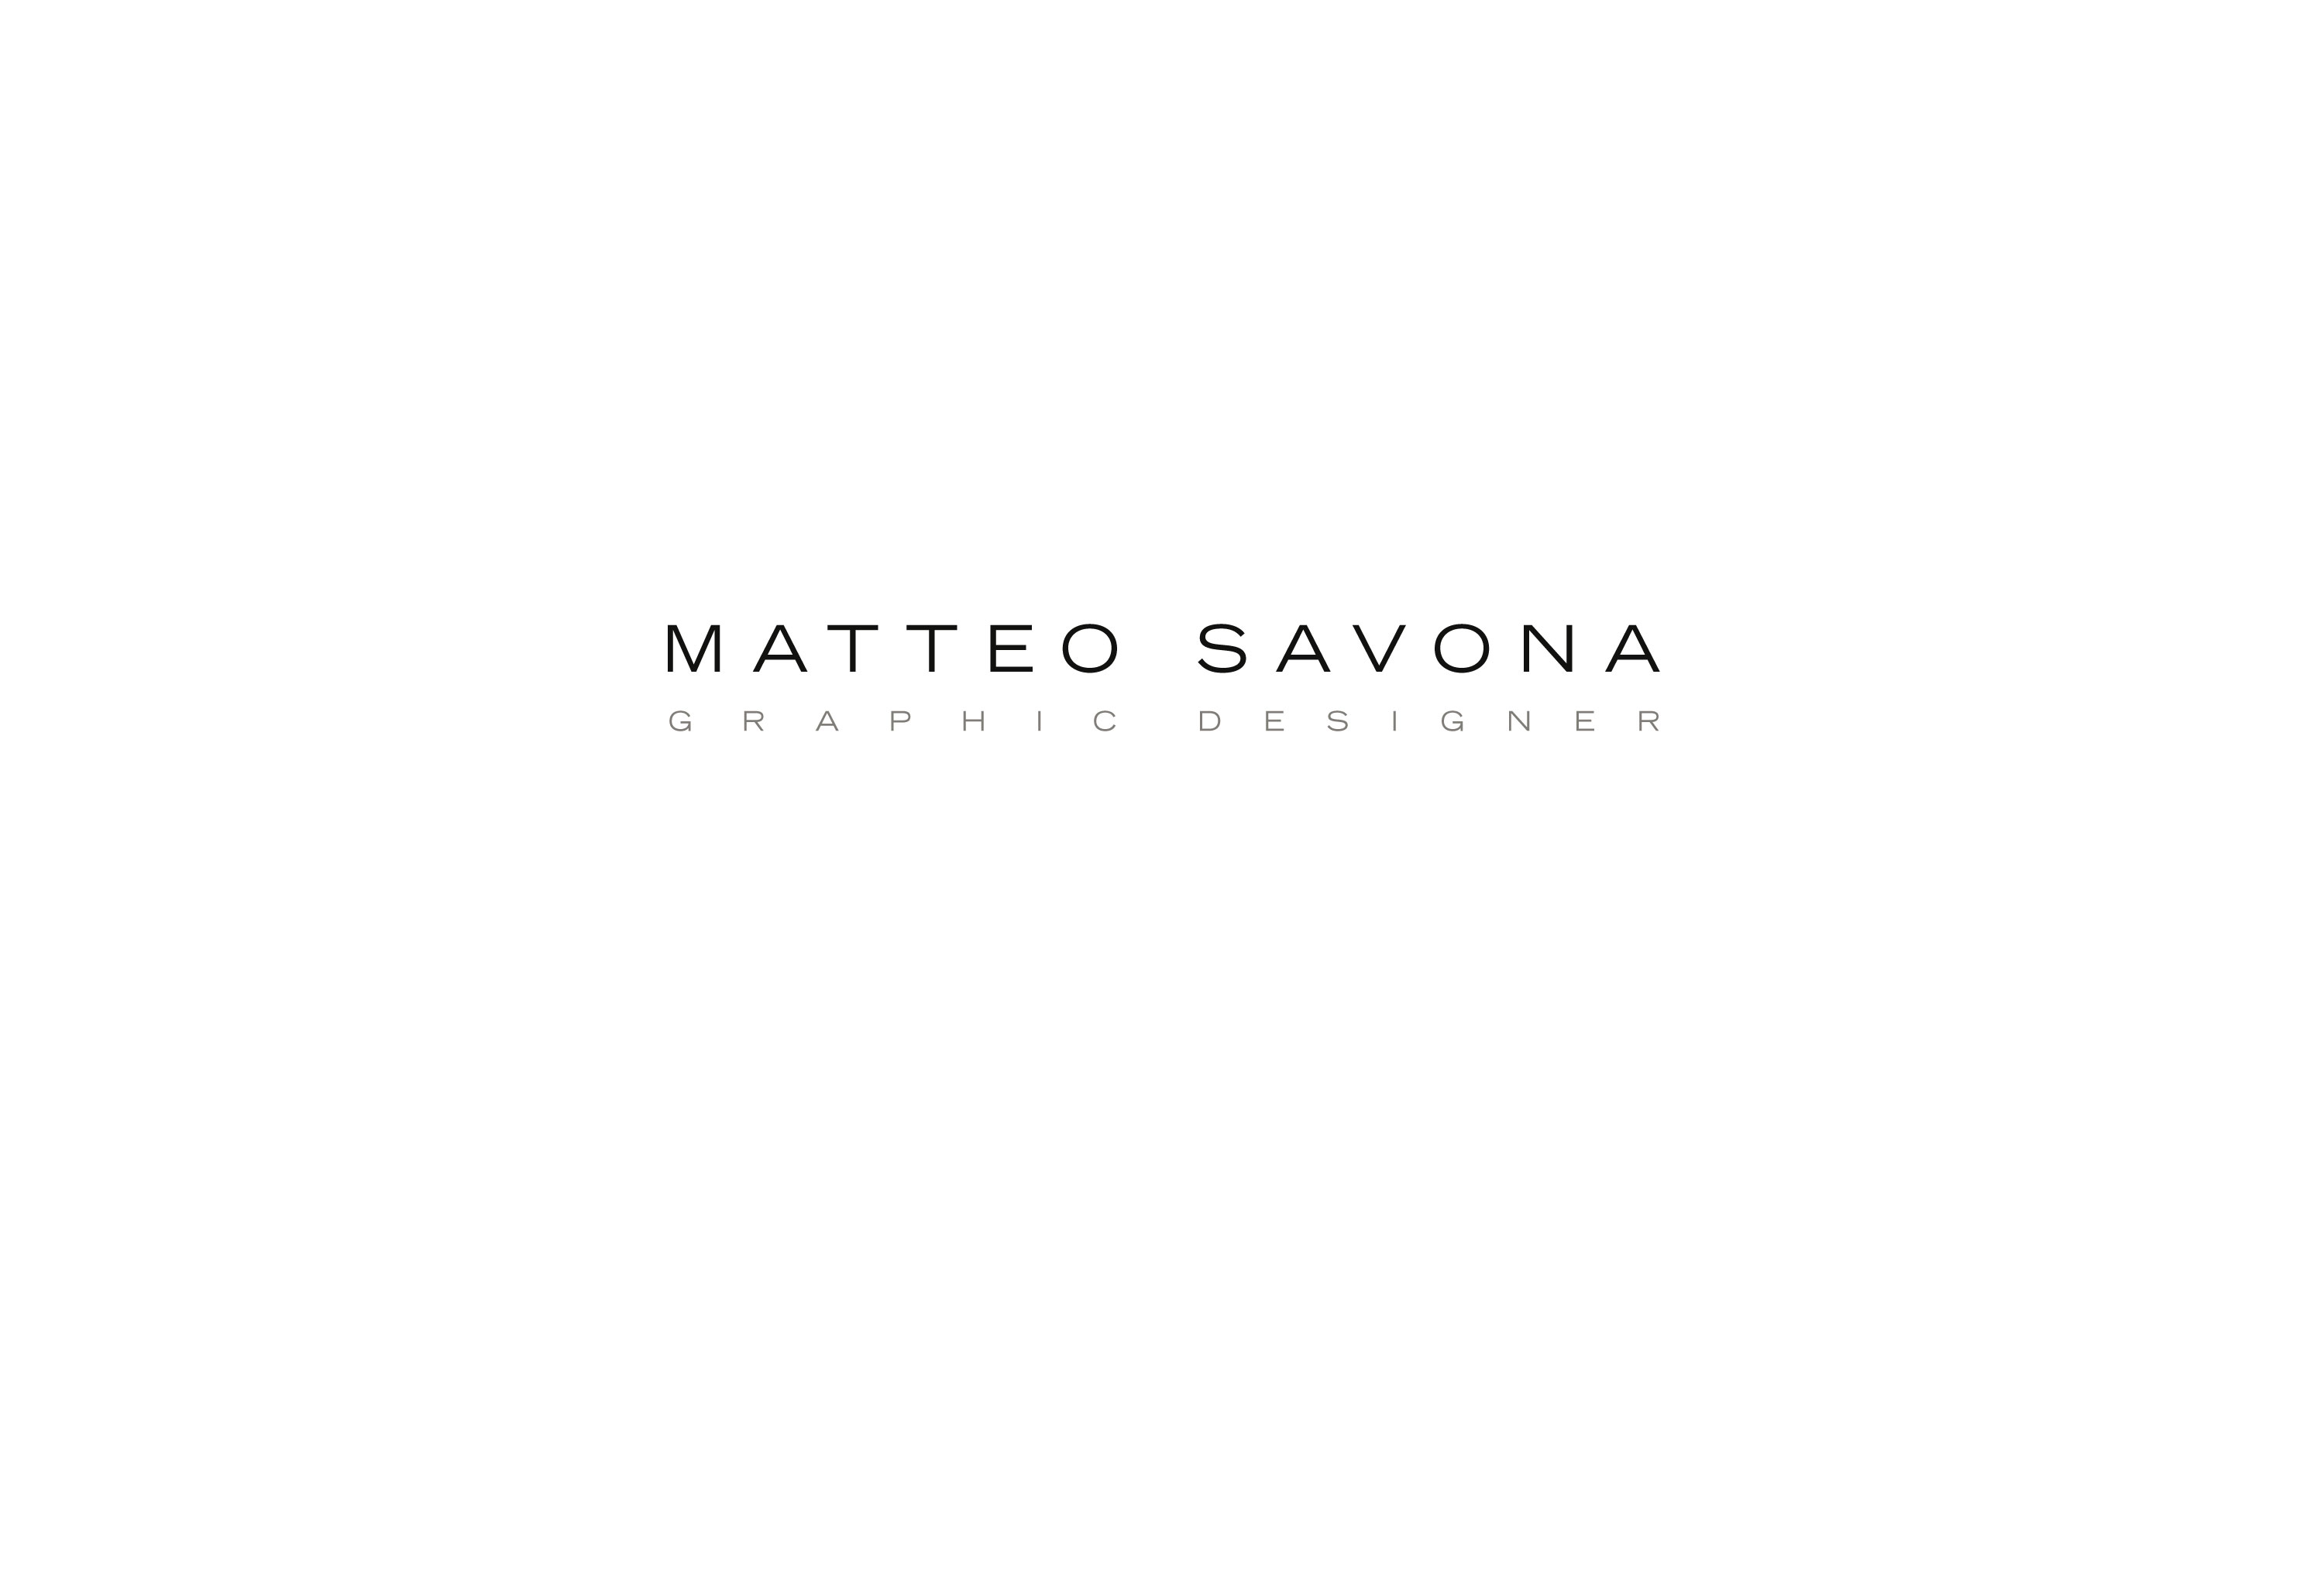 Matteo Savona